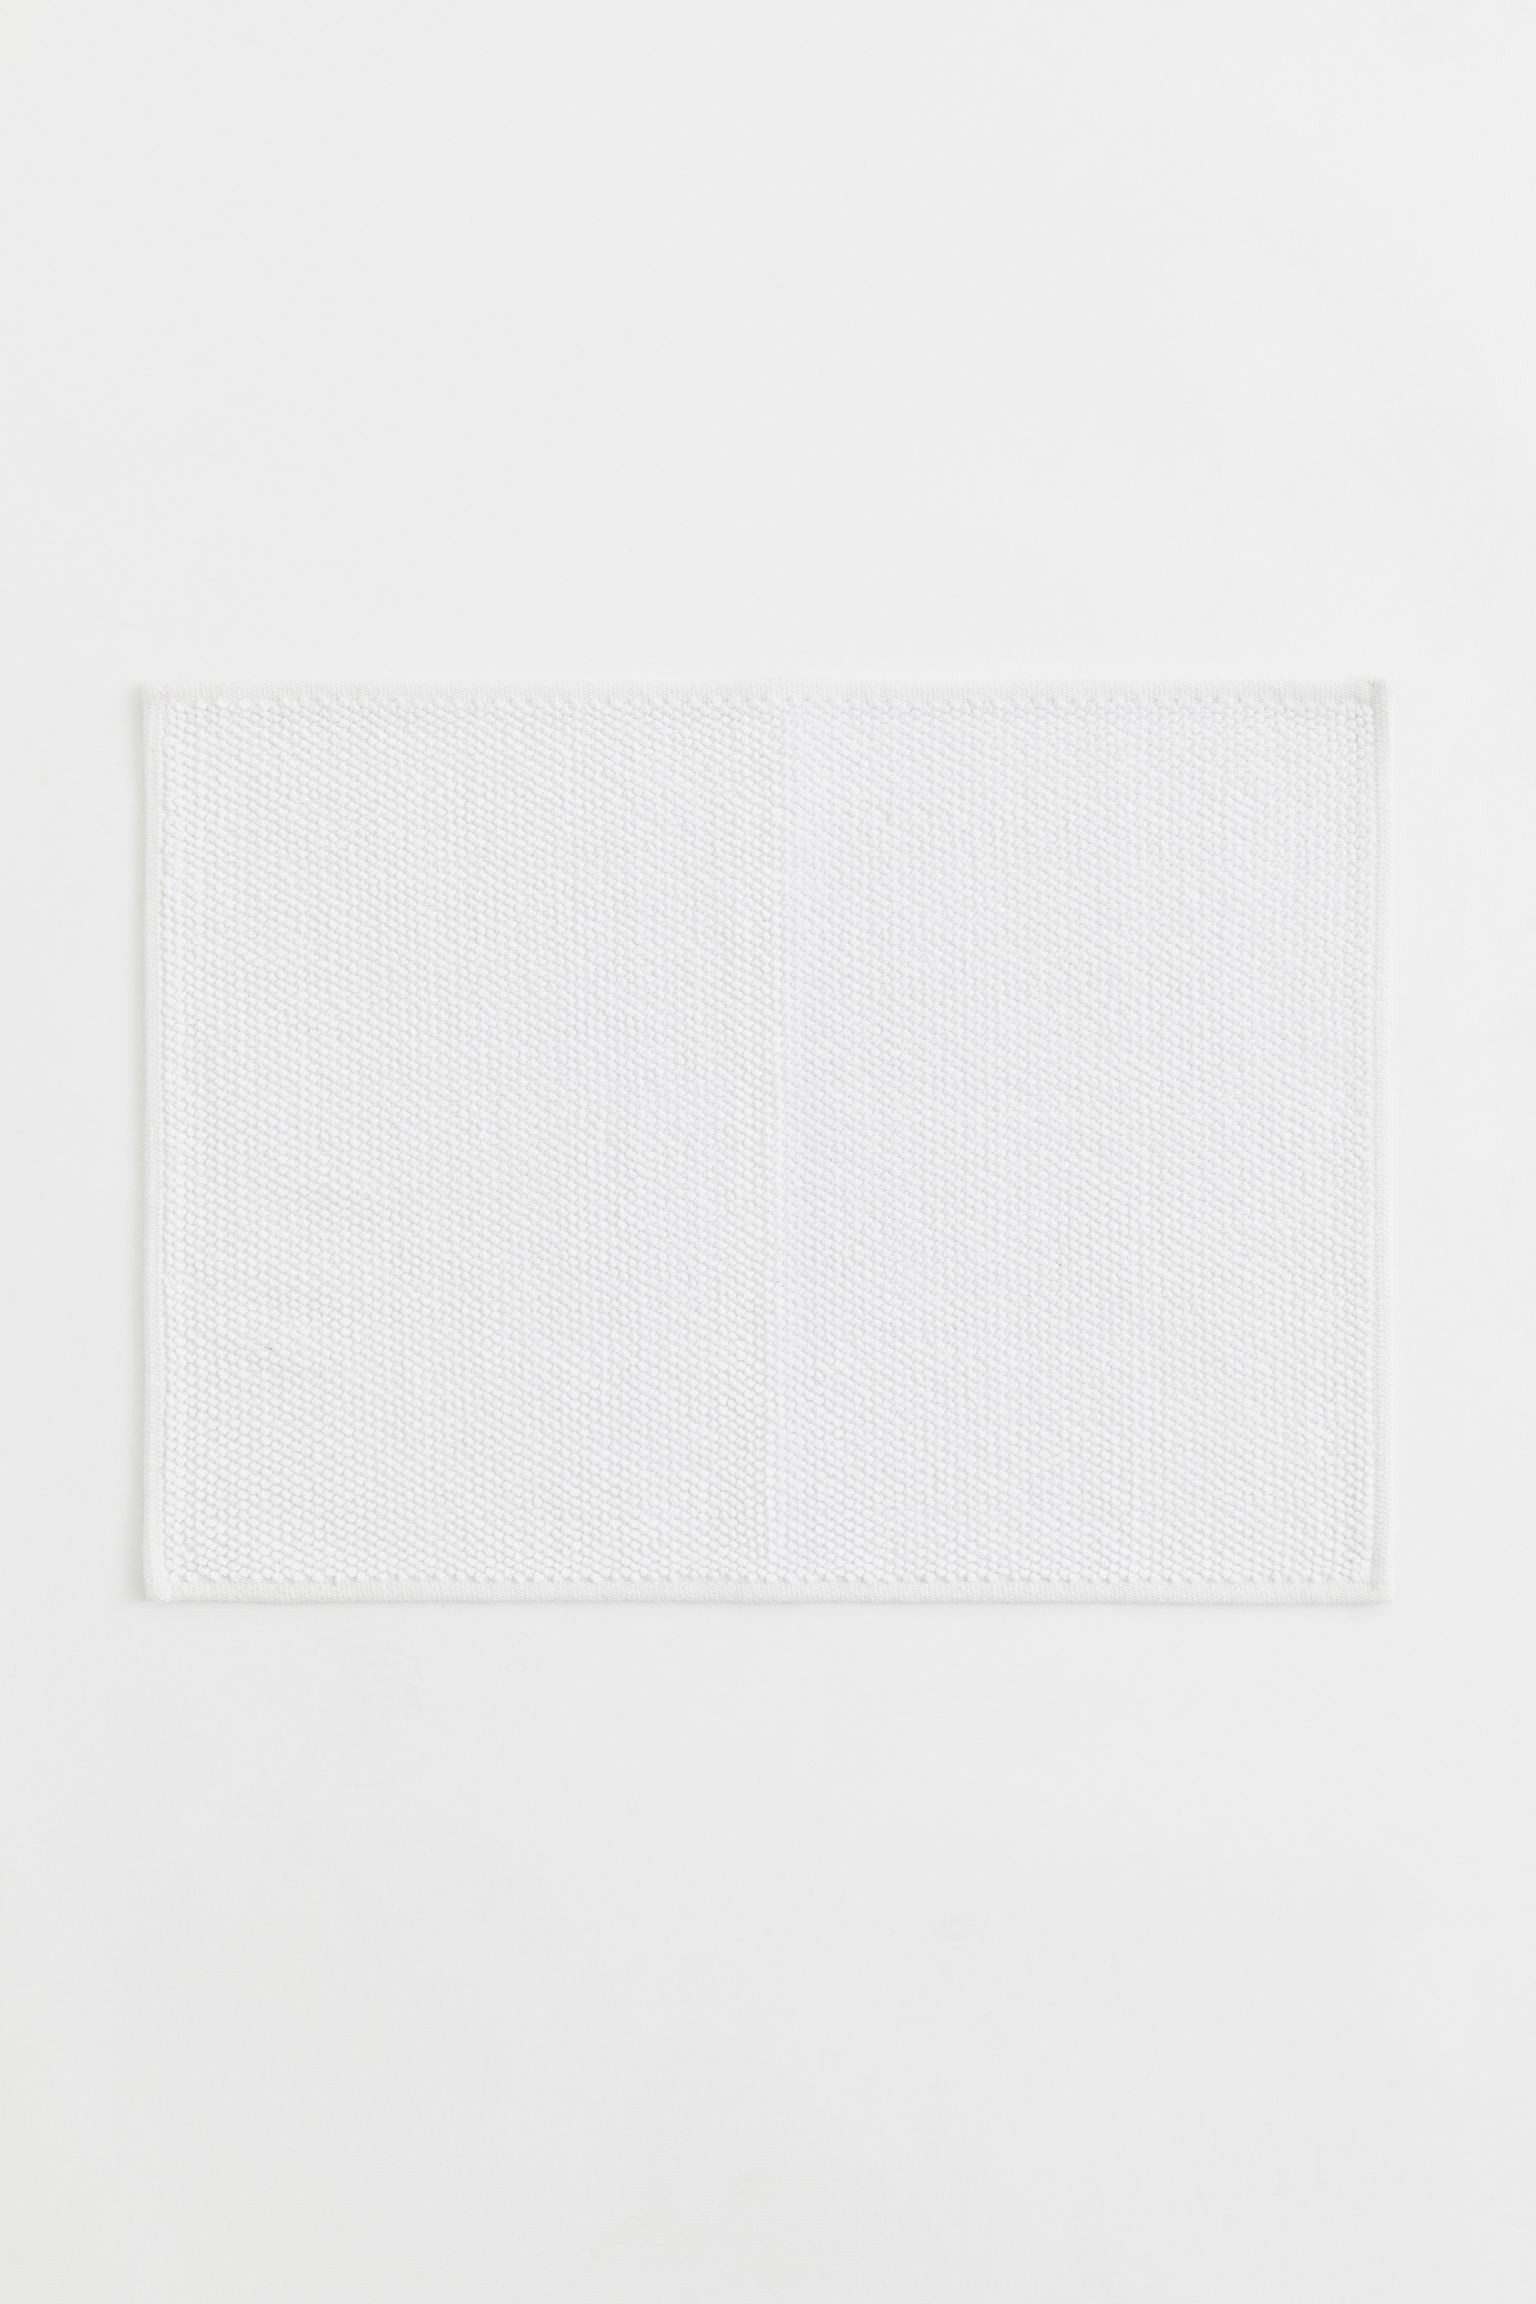 Хлопковый коврик для ванной, Белый, 50x70